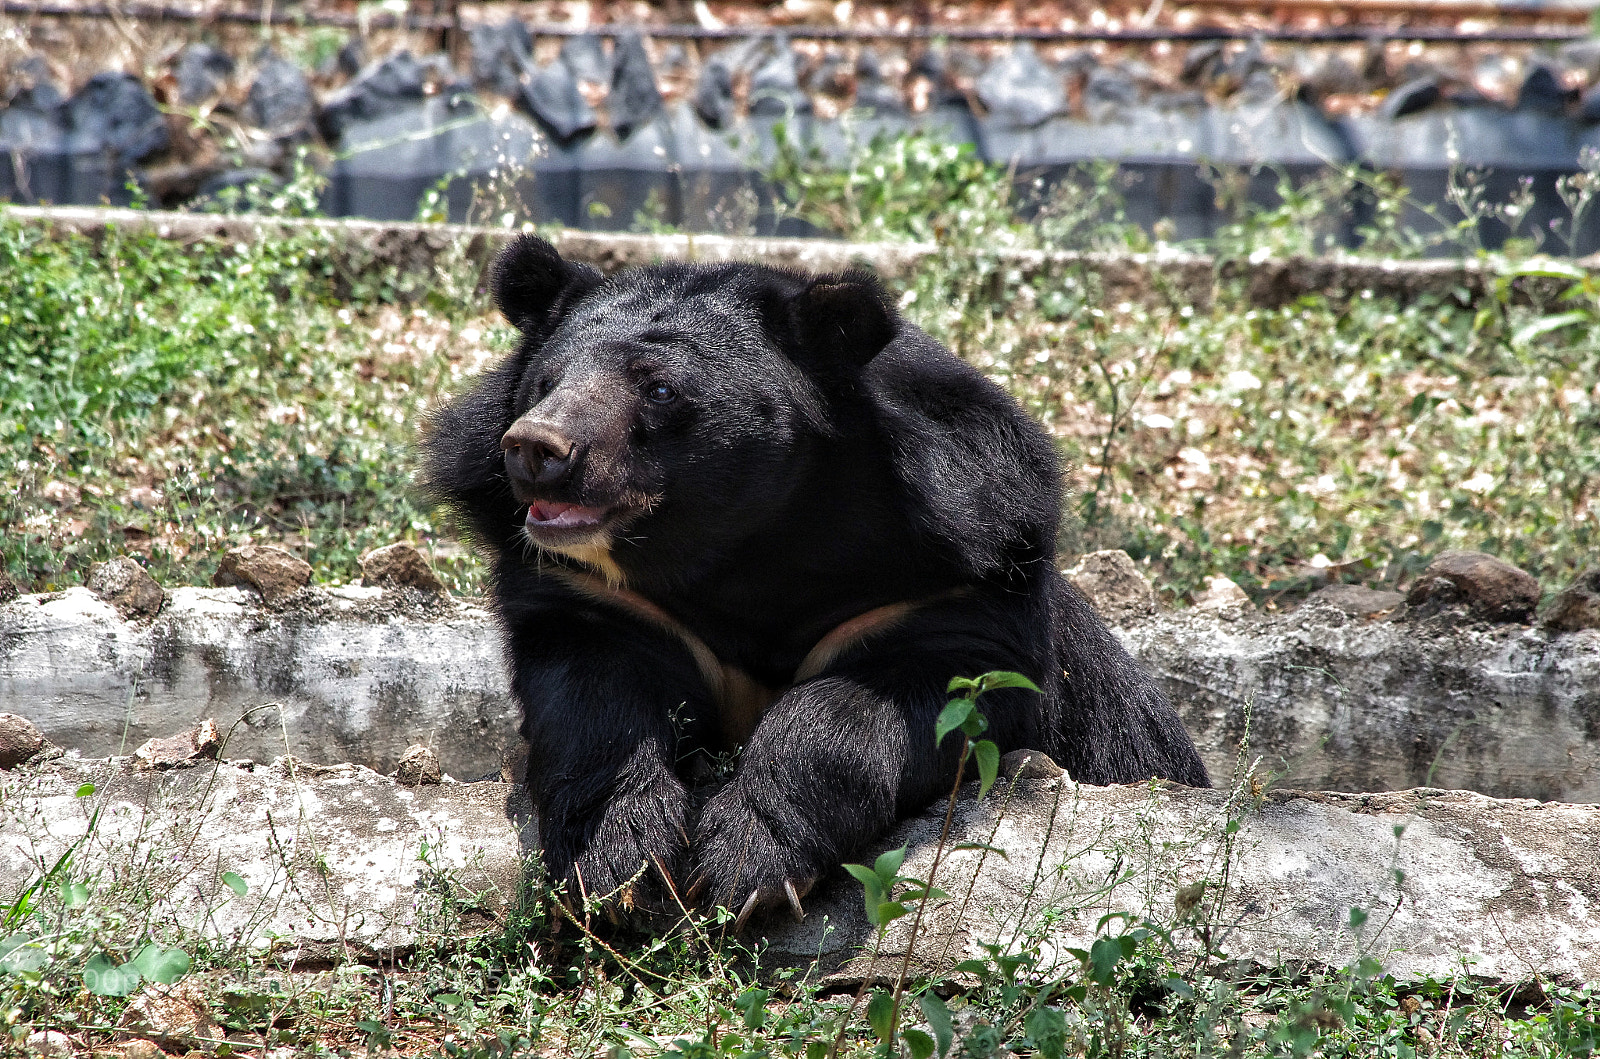 Pentax K-5 IIs sample photo. Himalayan black bear photography